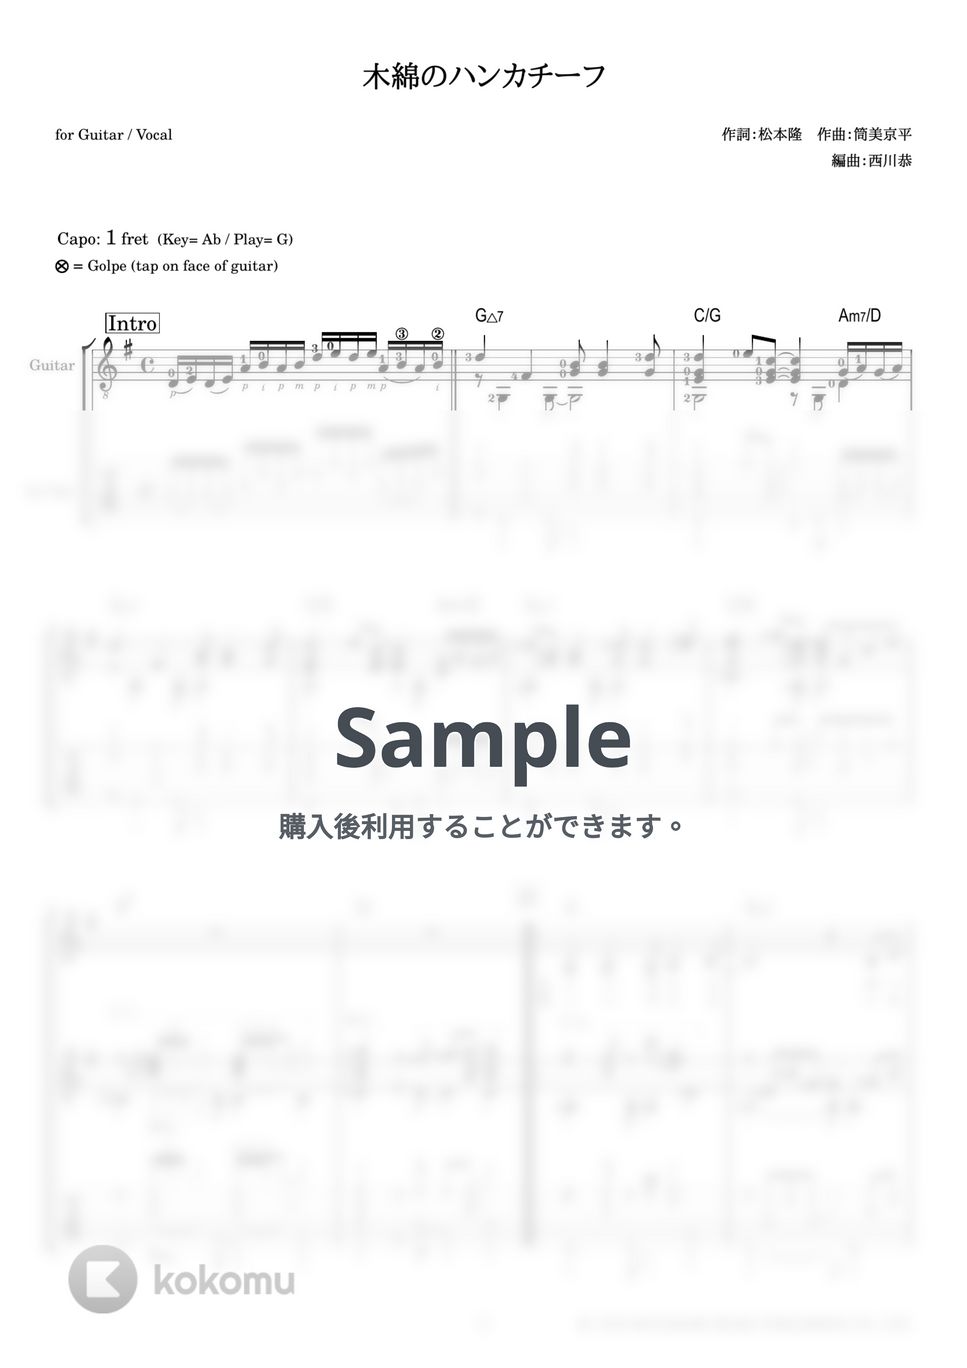 太田裕美 - 木綿のハンカチーフ (ギター伴奏 / 弾き語り) by 西川恭